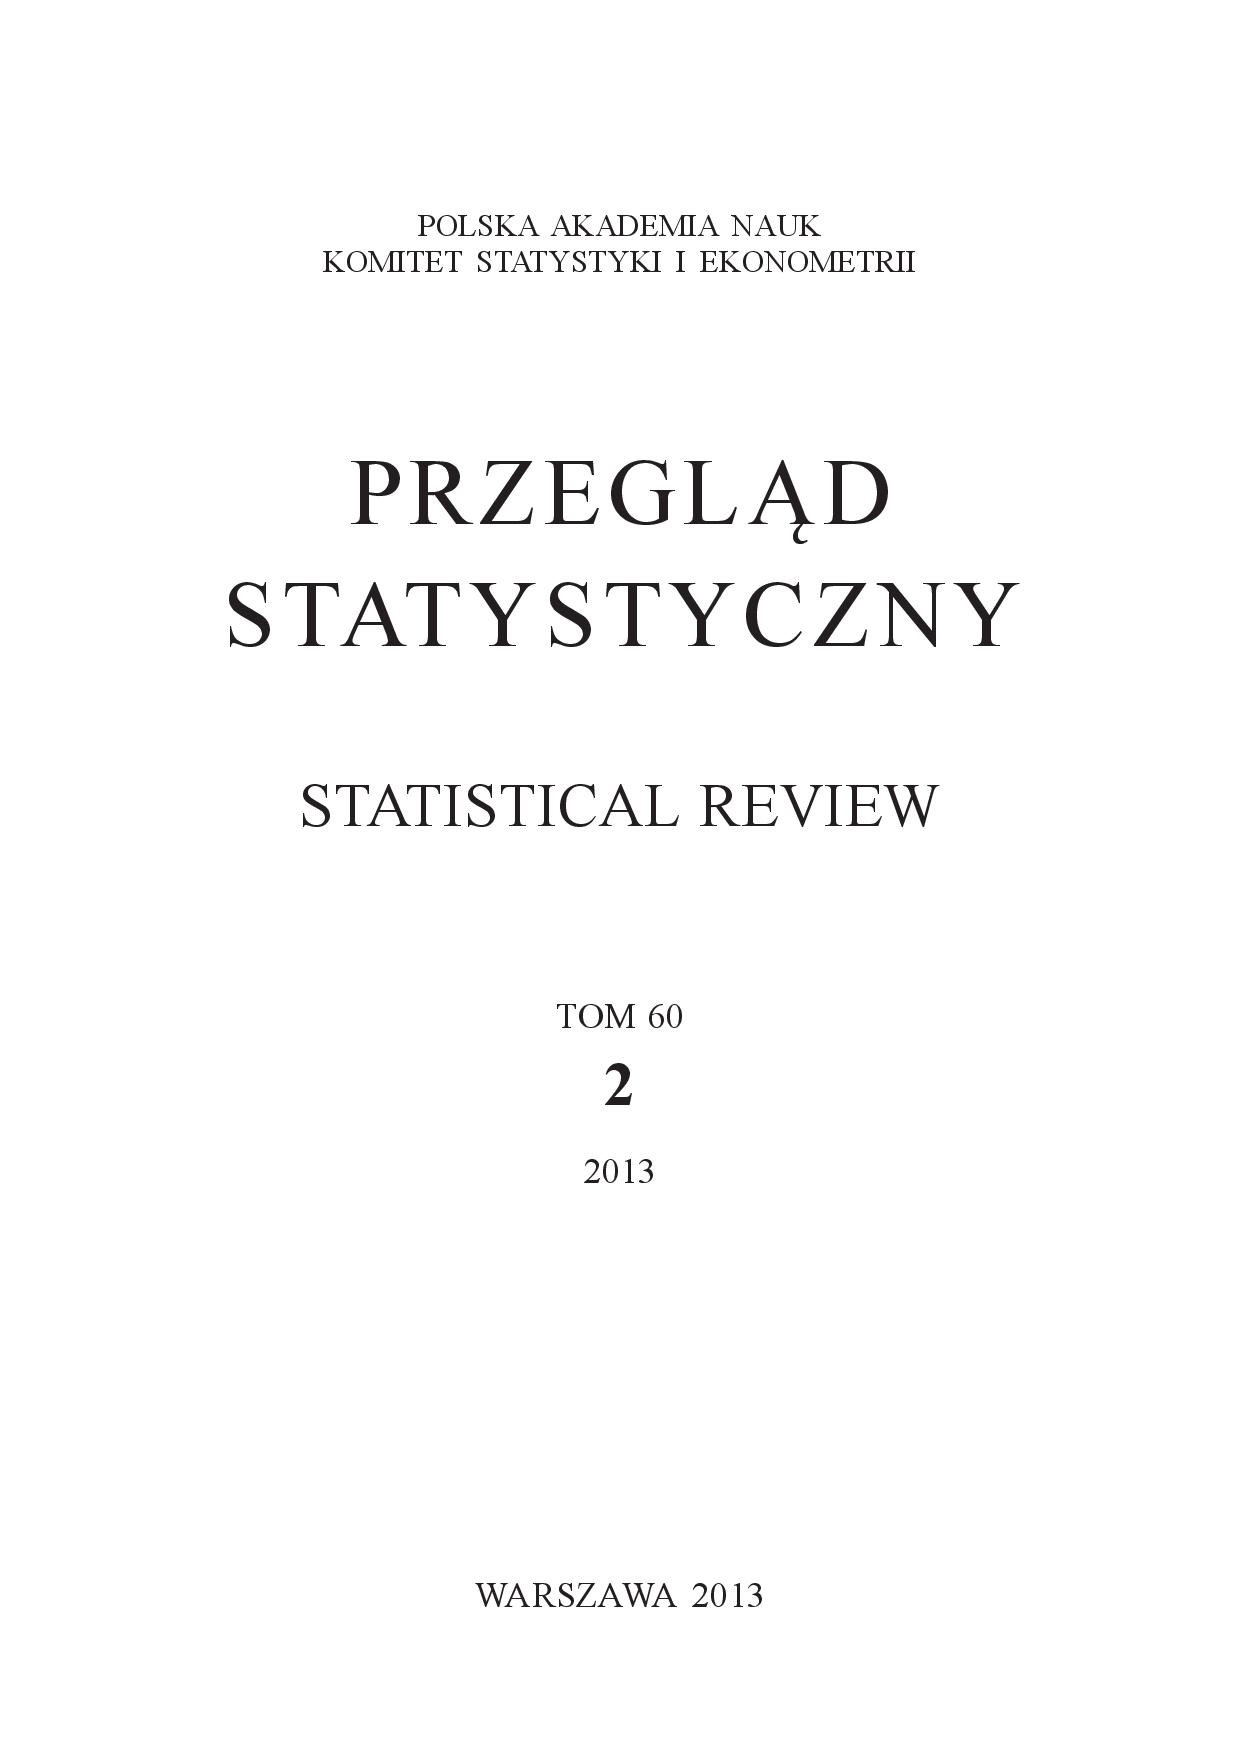 Uporczywość inflacji i jej komponentów – badanie empiryczne dla Polski